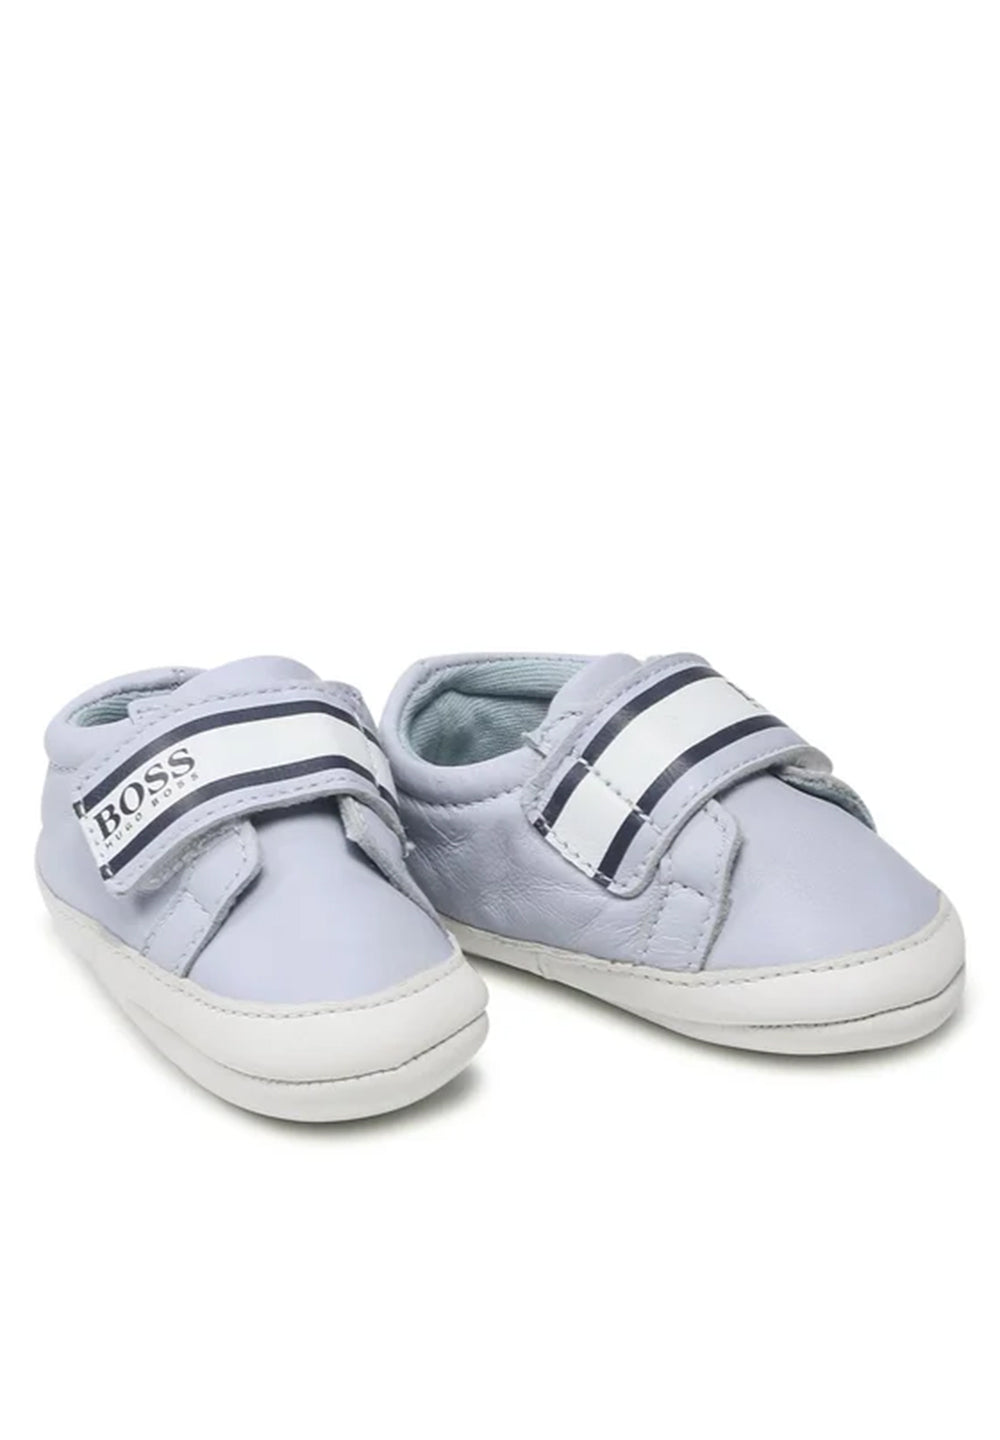 Blaue Schuhe für Neugeborene